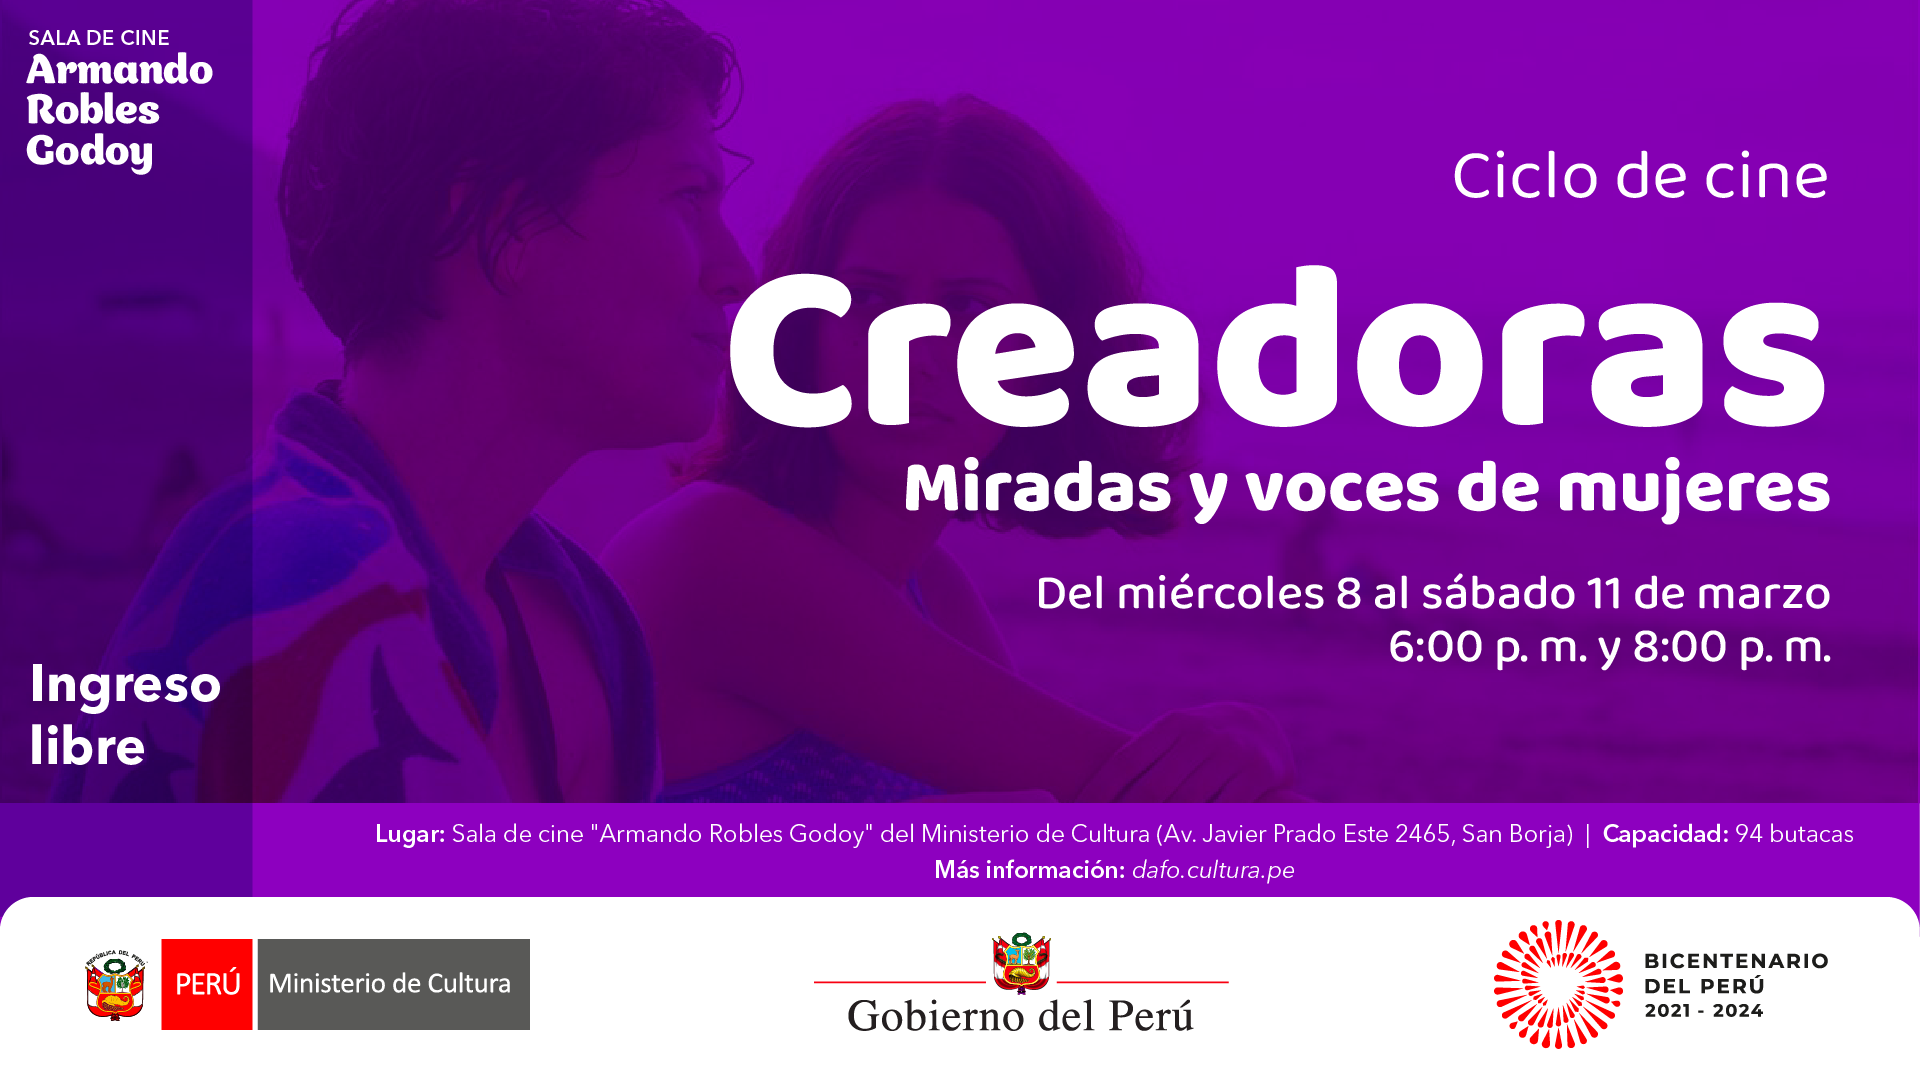 Ciclo de cine "Creadoras. Miradas y voces de mujeres" en la sala Armando Robles Godoy